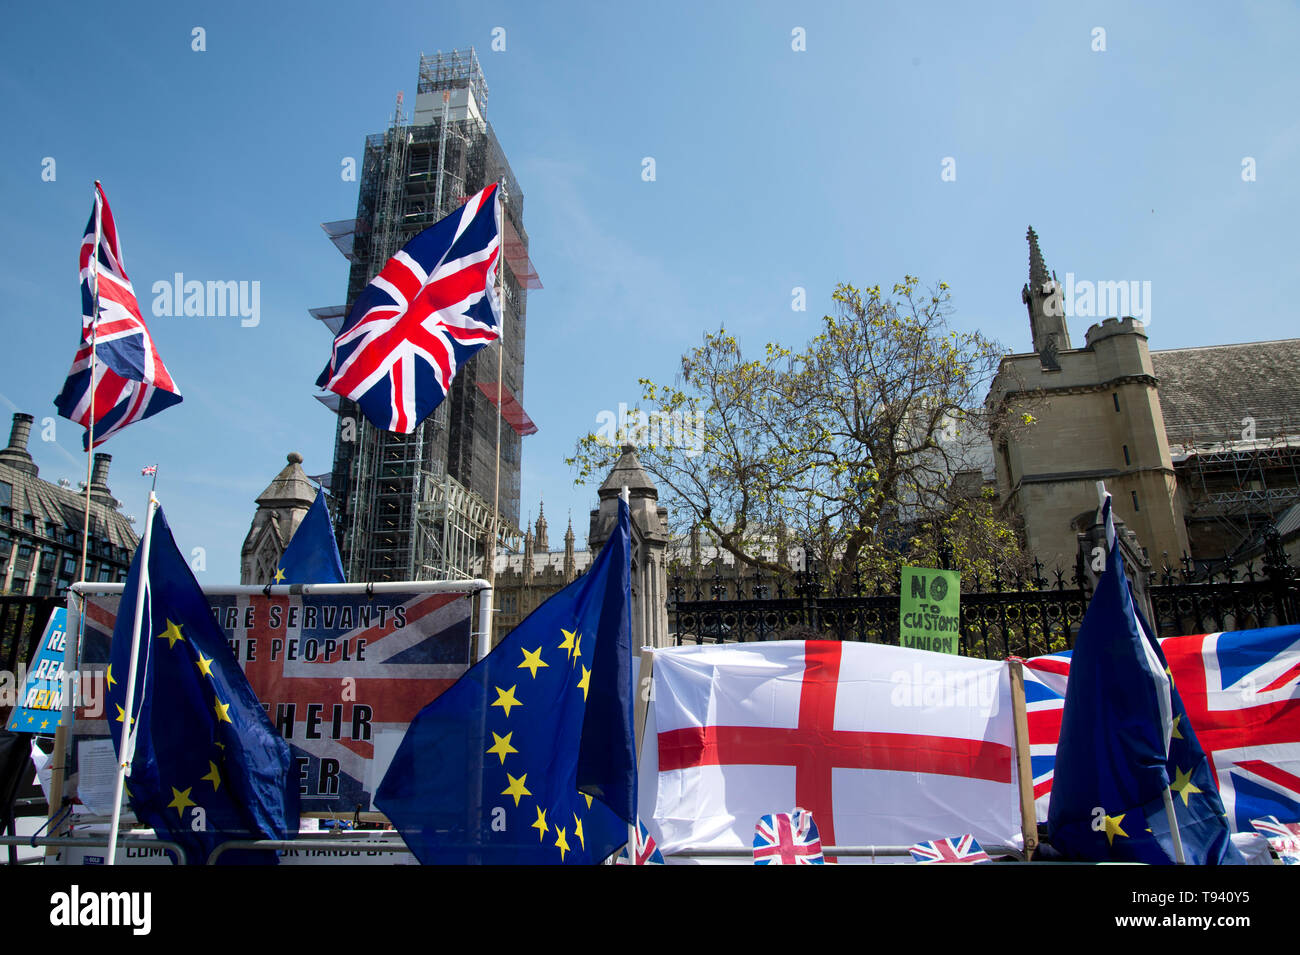 Parliament Square, Westminster, London. 16. Mai 2019. Flaggen - Englische und Europäische. Stockfoto